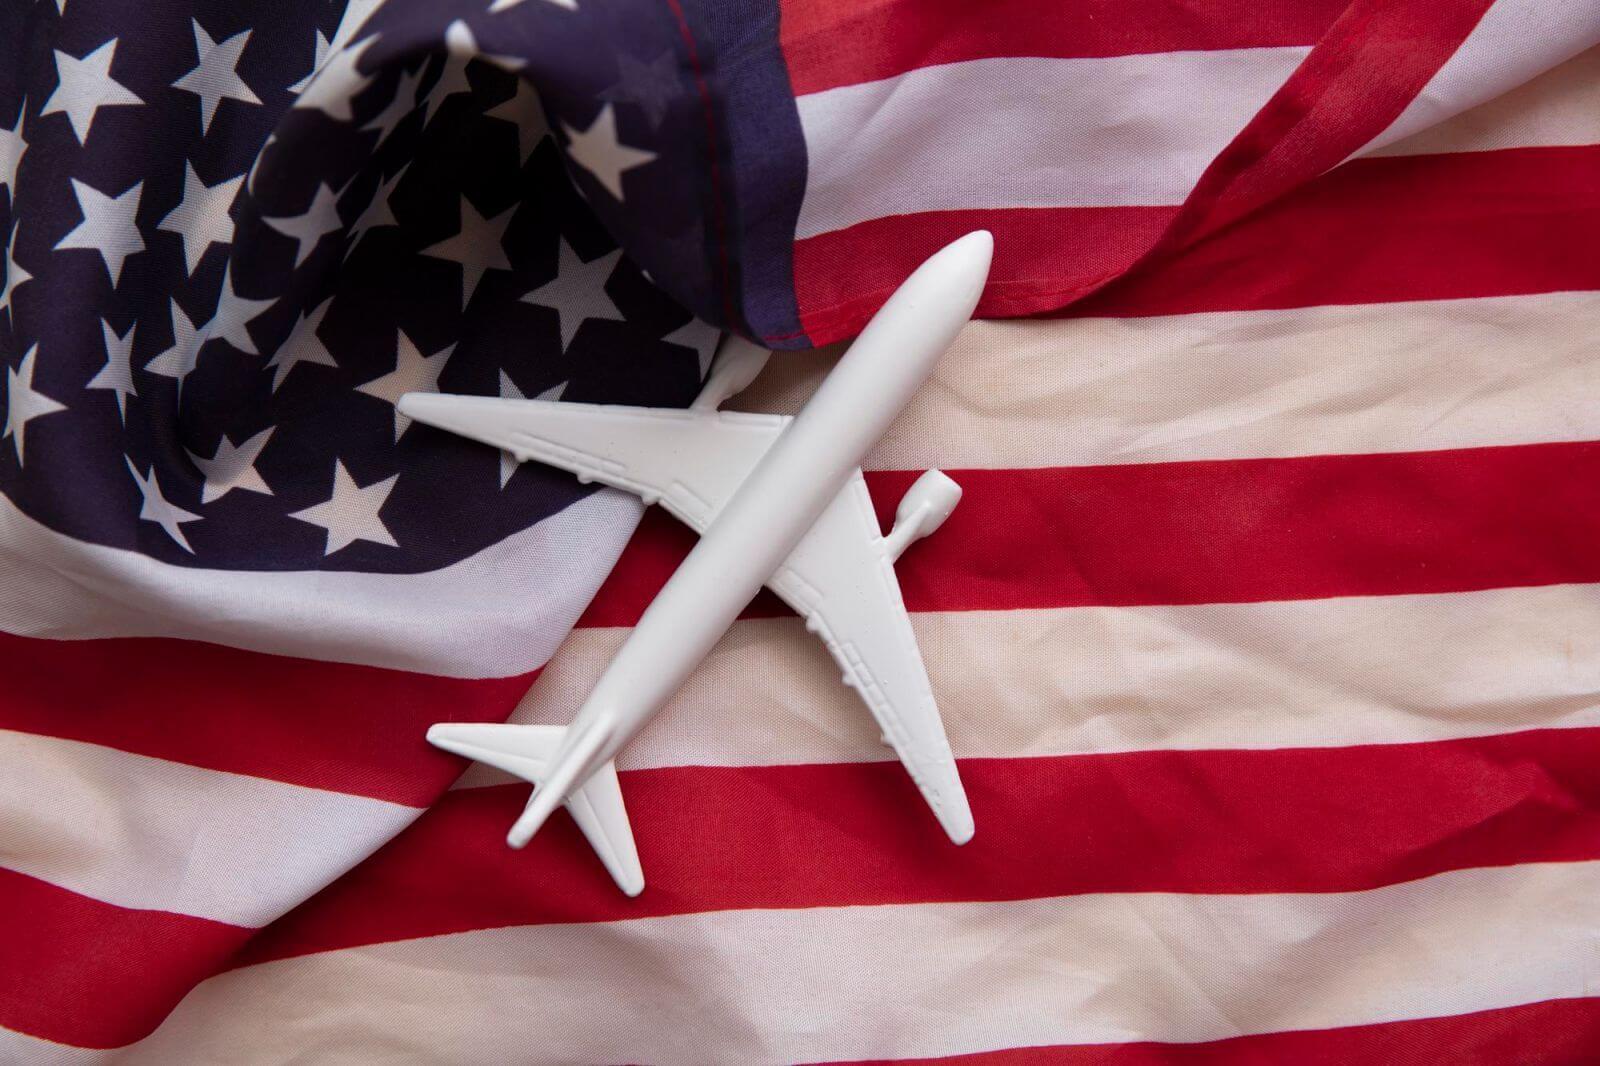 Ile trwa lot do USA? Odpowiadamy na to pytanie! - Travelers